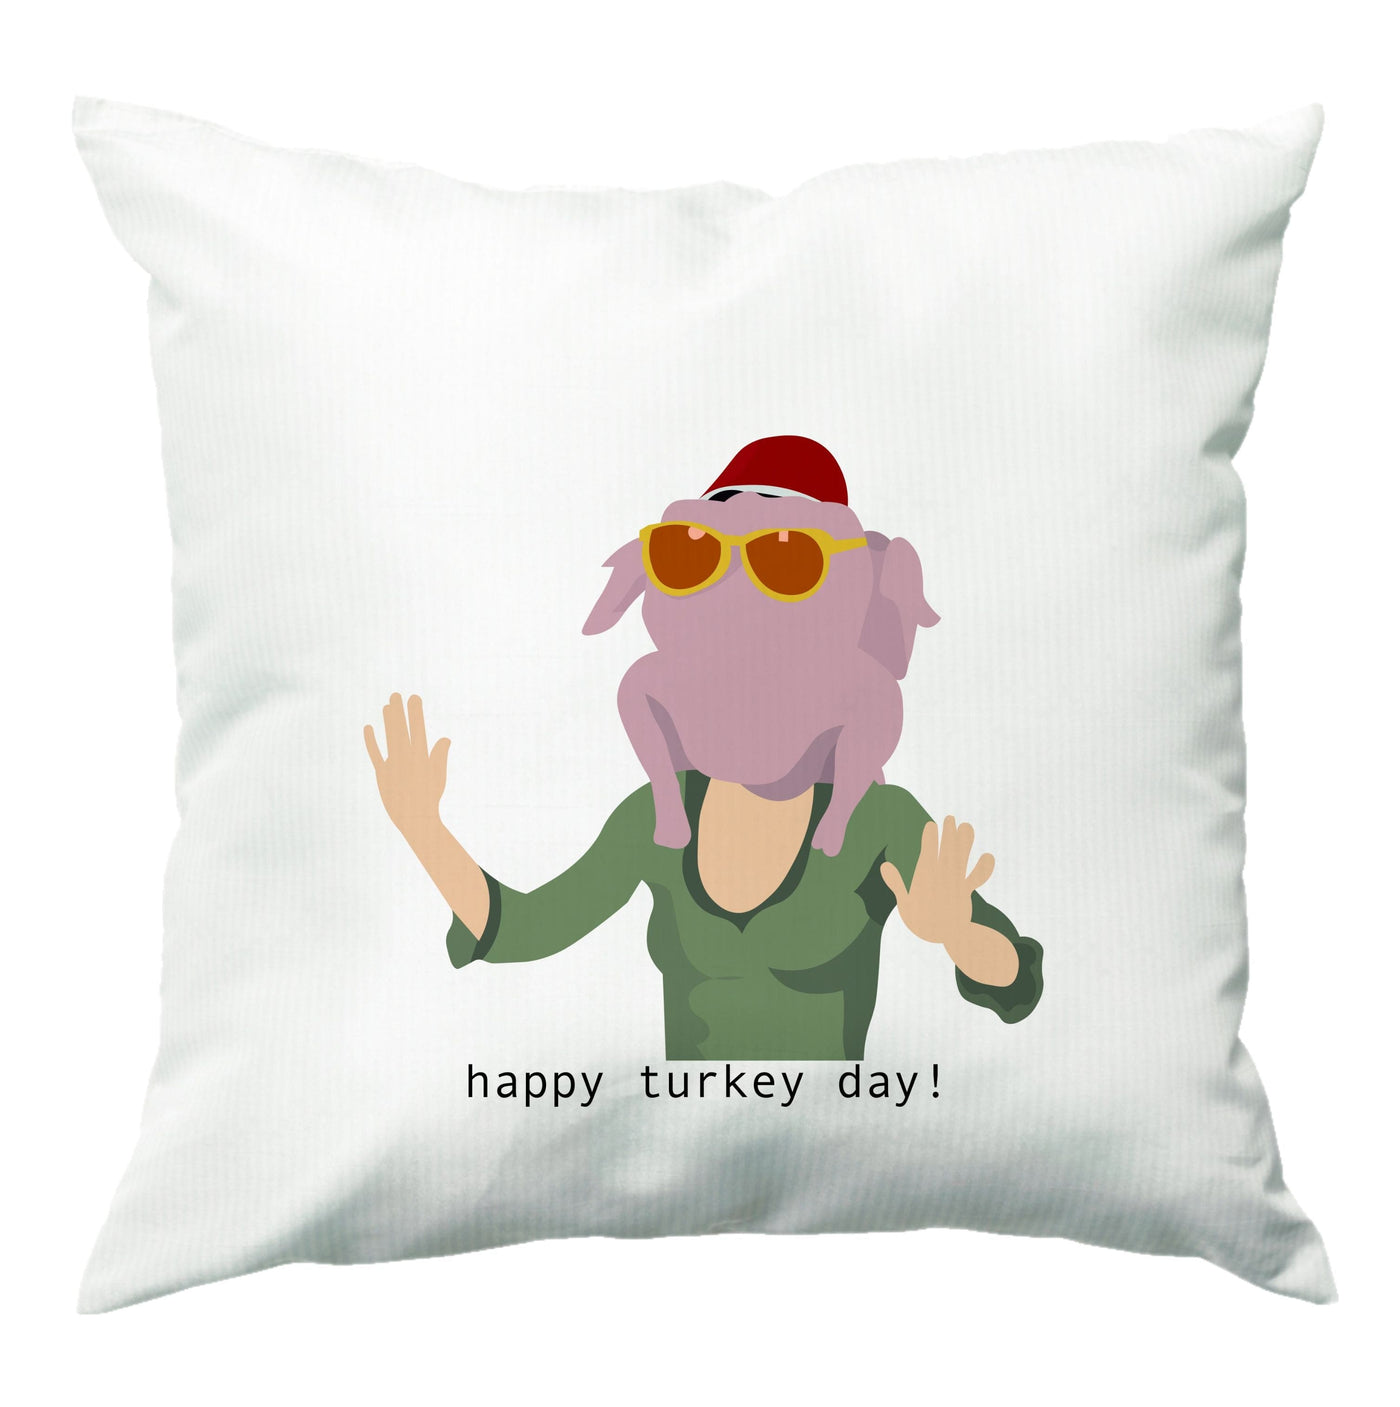 Turkey Day - Friends Cushion